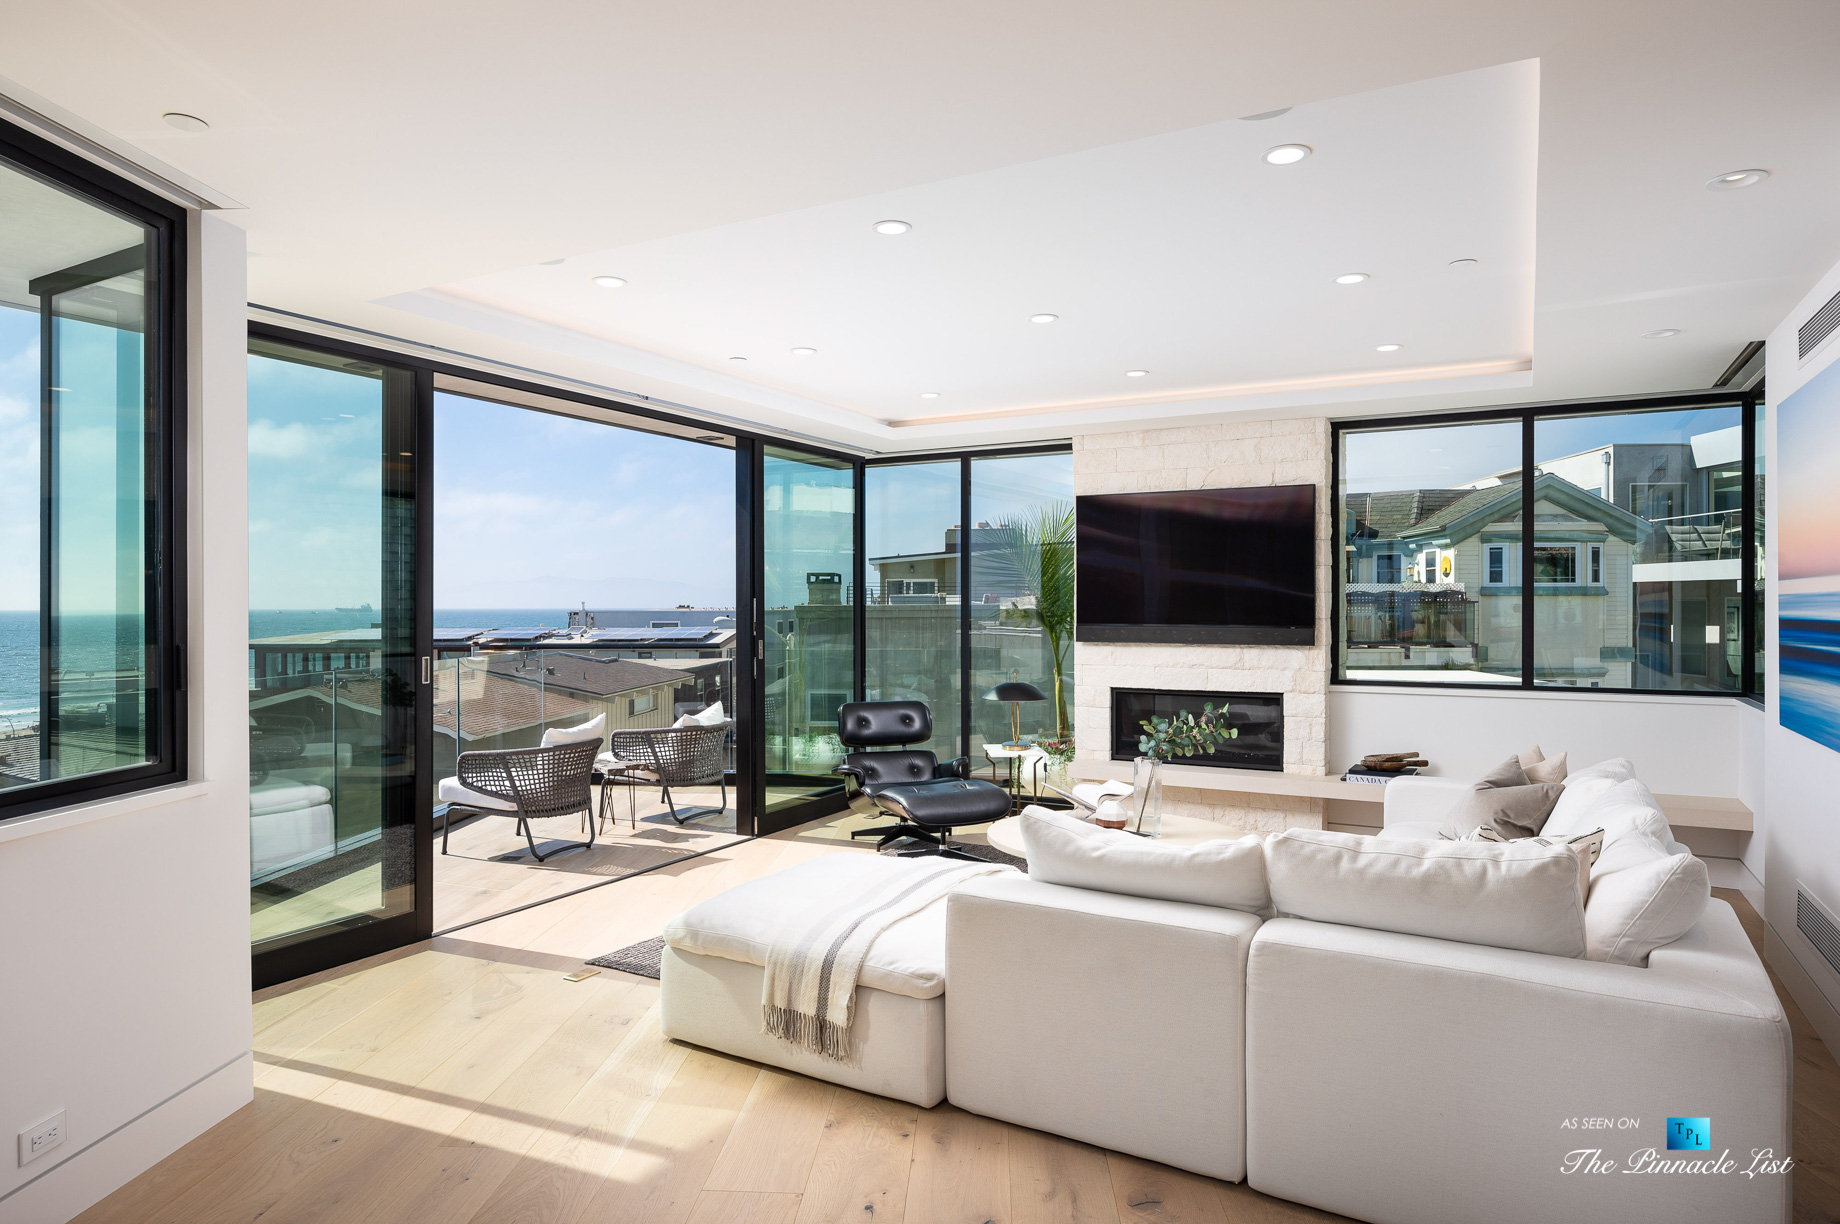 2016 Ocean Dr, Manhattan Beach, CA, USA – Living Room – Luxury Real Estate – Modern Ocean View Home